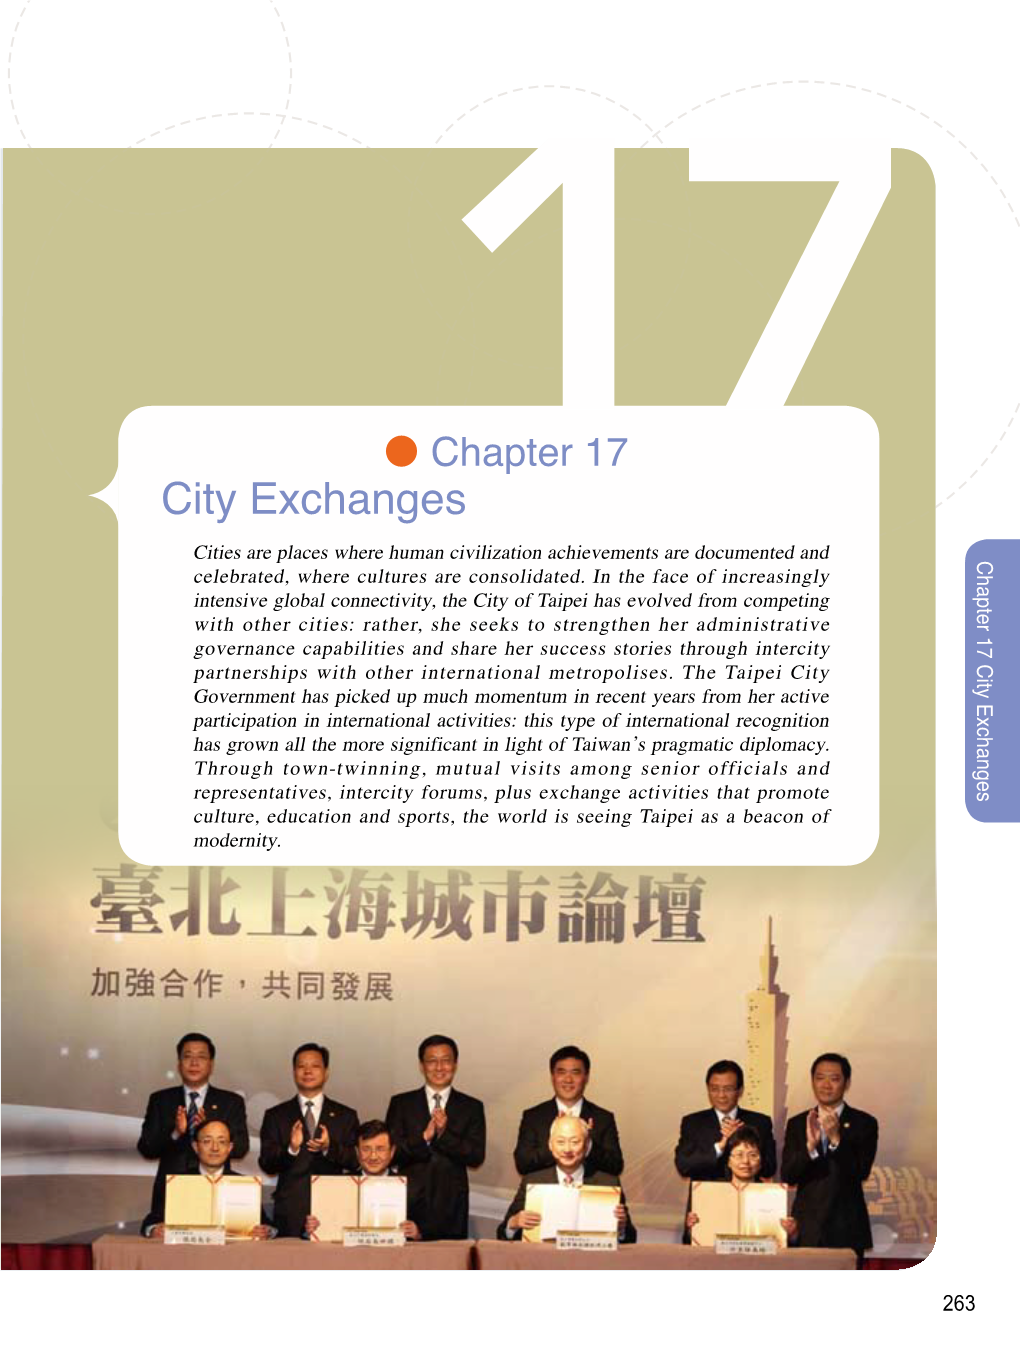 City Exchanges